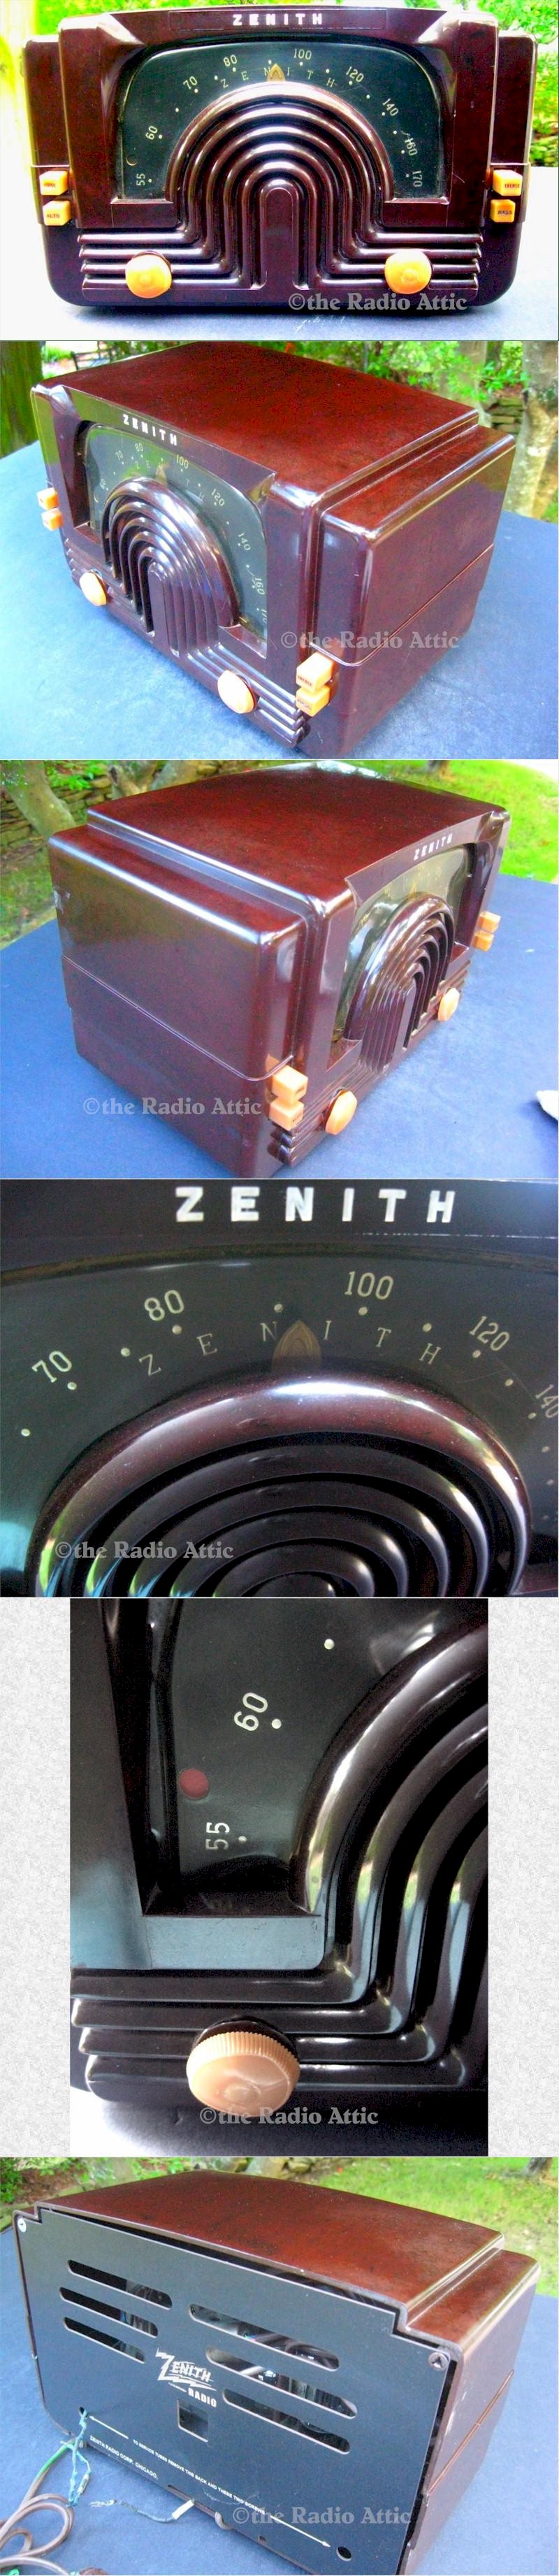 Zenith 5-G-617 